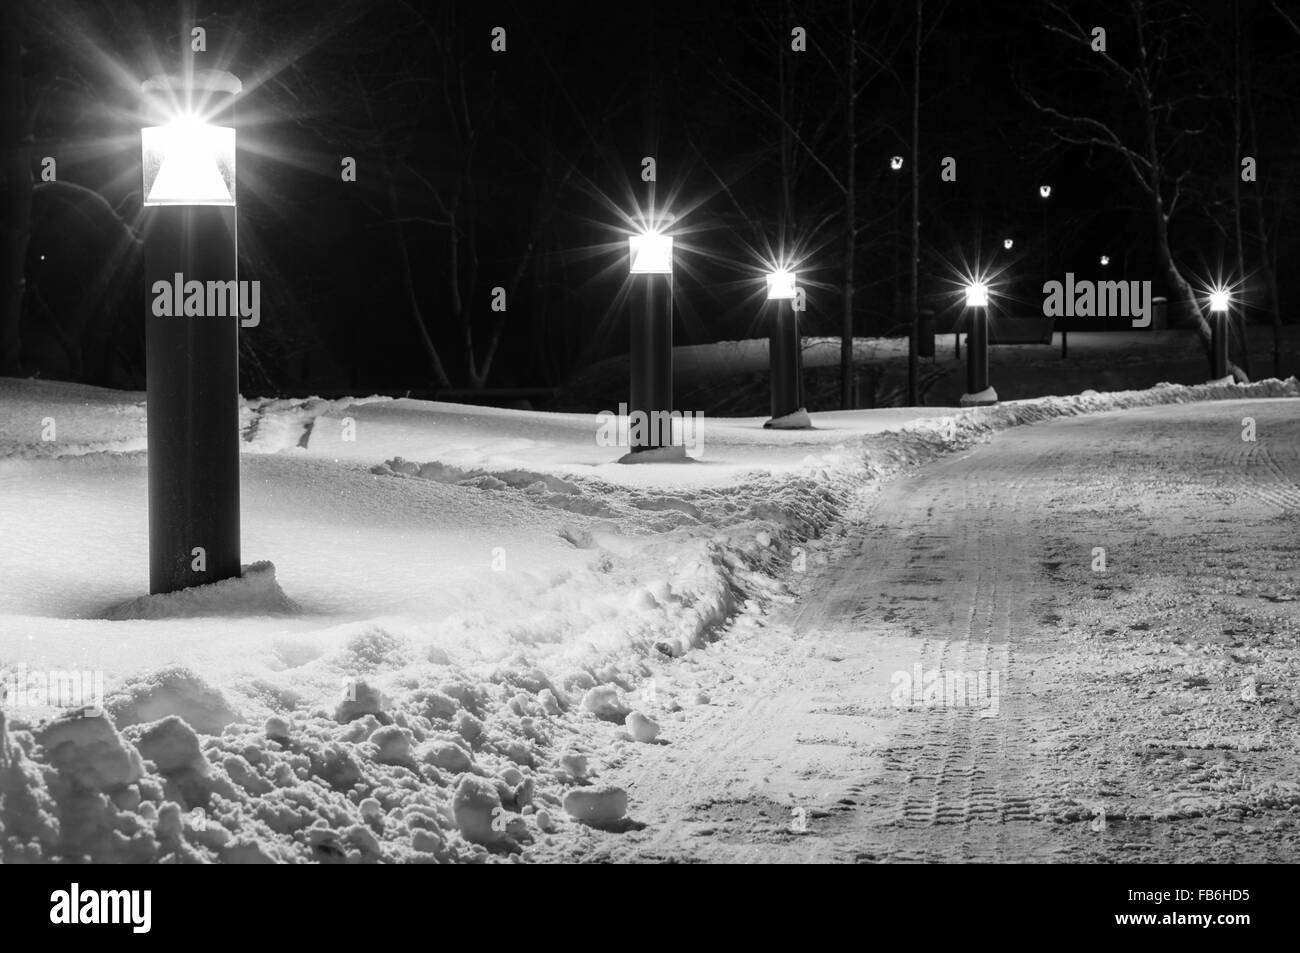 Inverno il sentiero illuminato da lampioncini moderni, immagine in bianco e nero Foto Stock